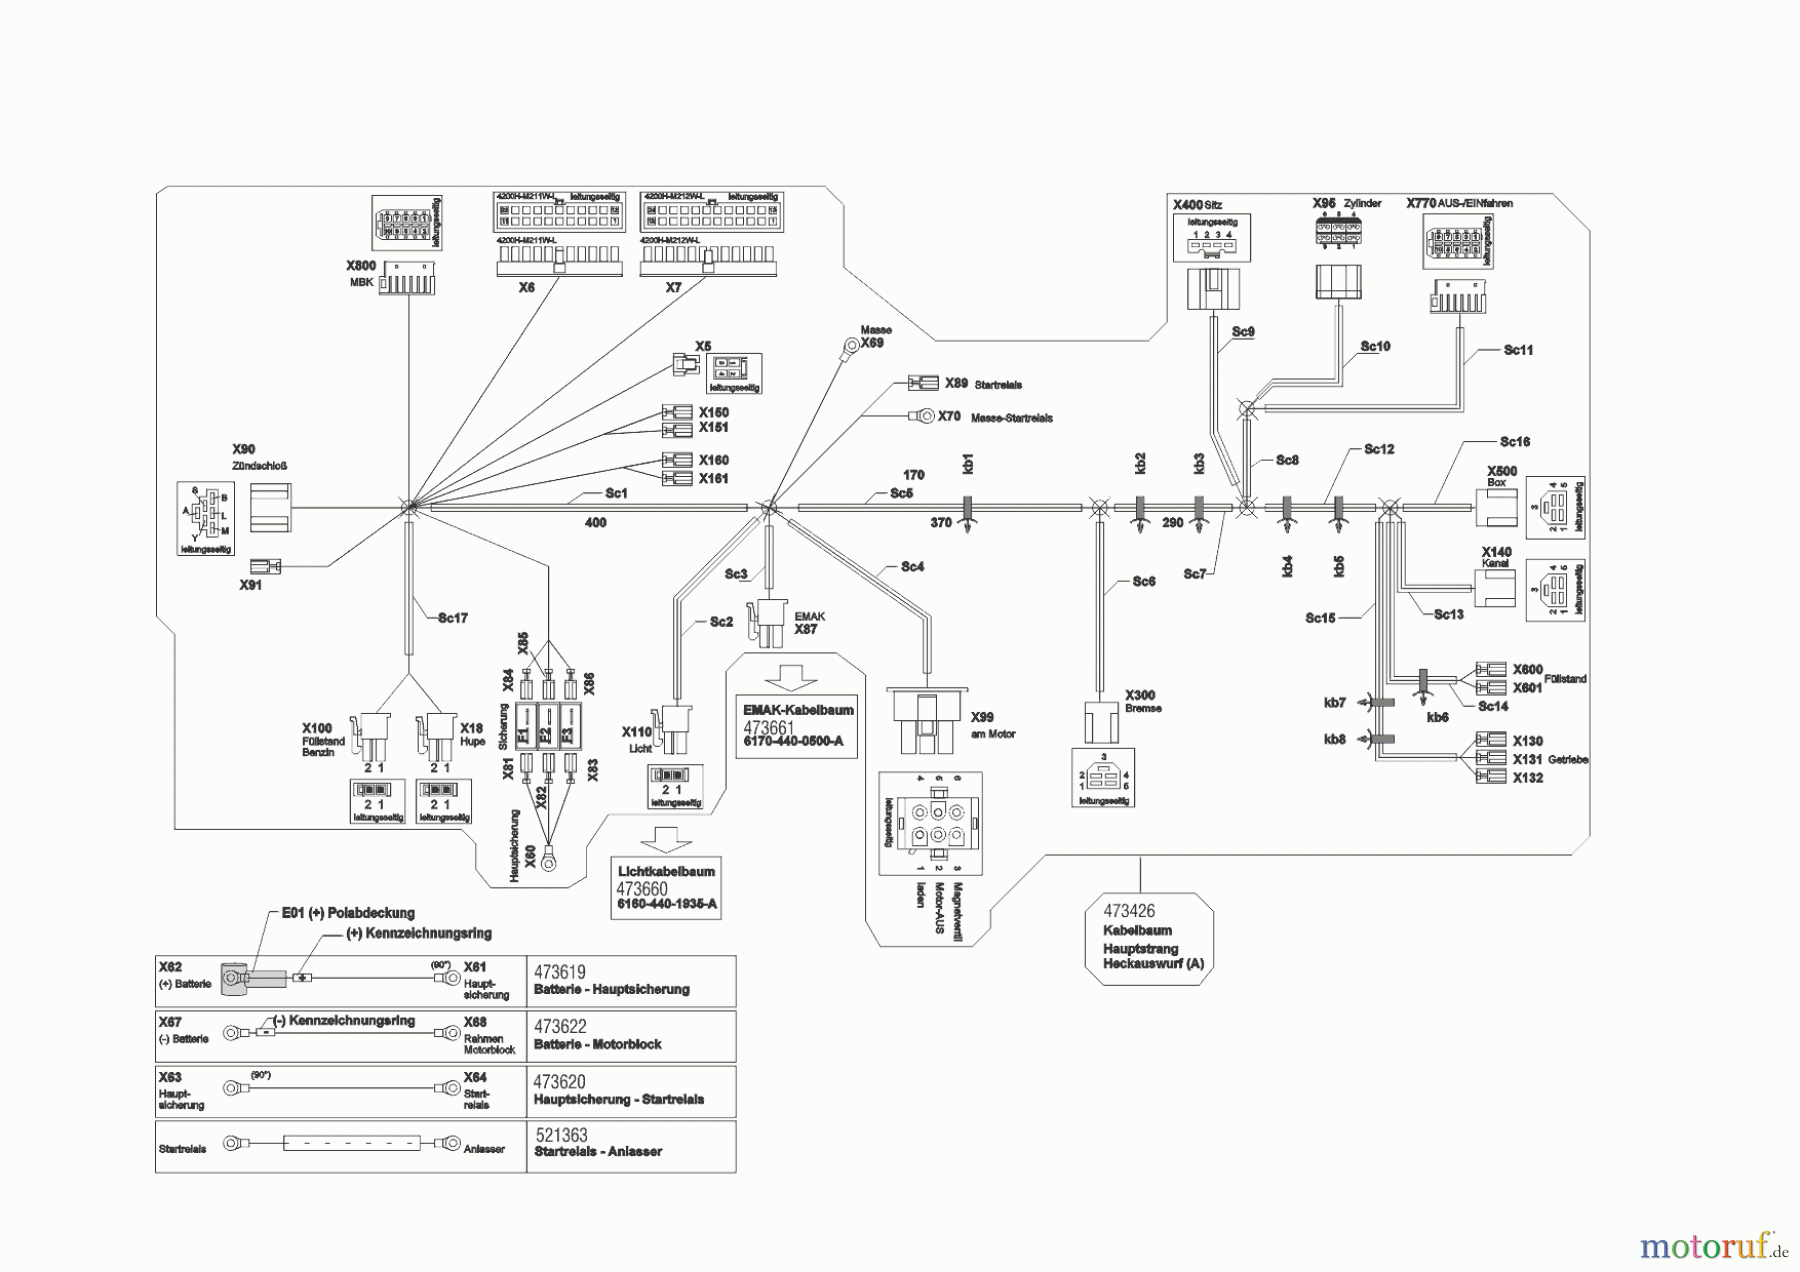  Powerline Gartentechnik Rasentraktor  T23-125.4 HD V2  ab 02/2019 Seite 10